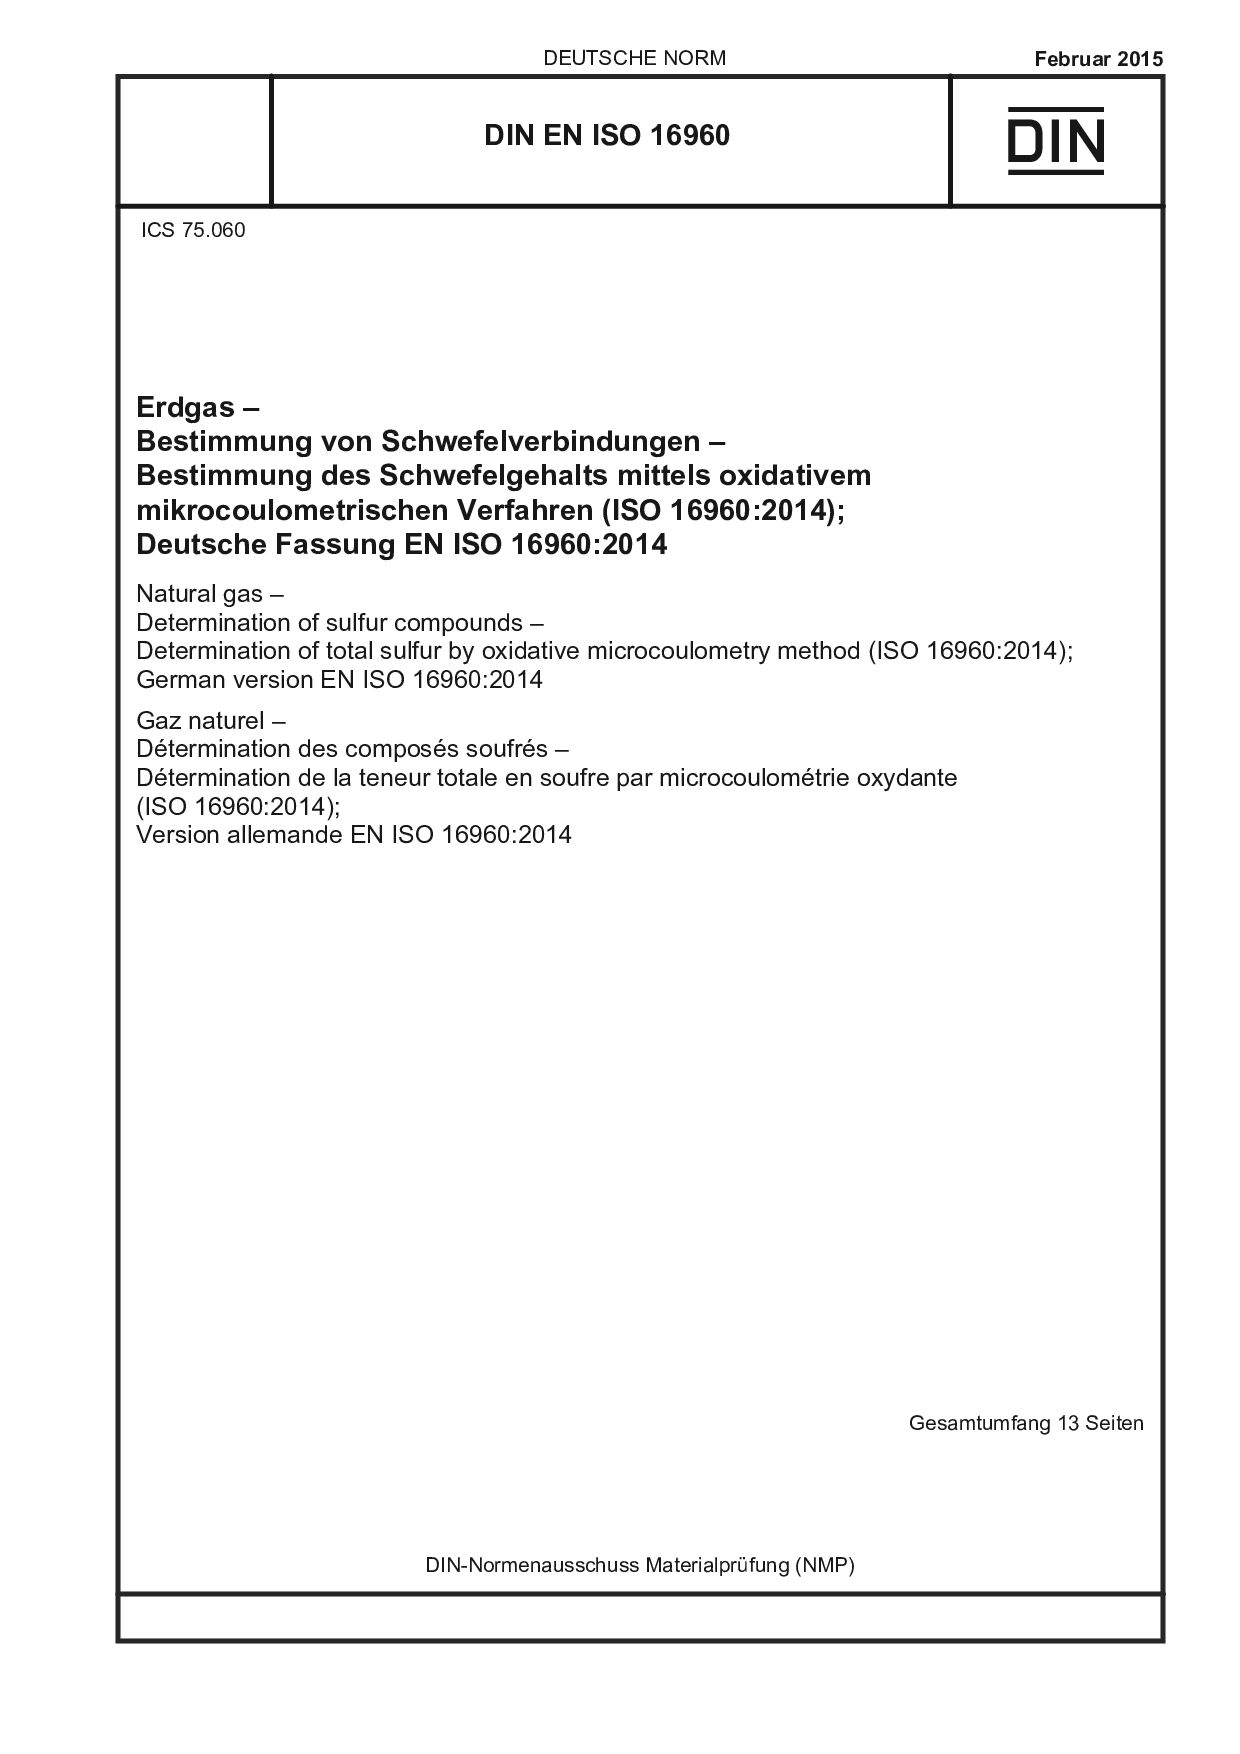 DIN EN ISO 16960:2015封面图